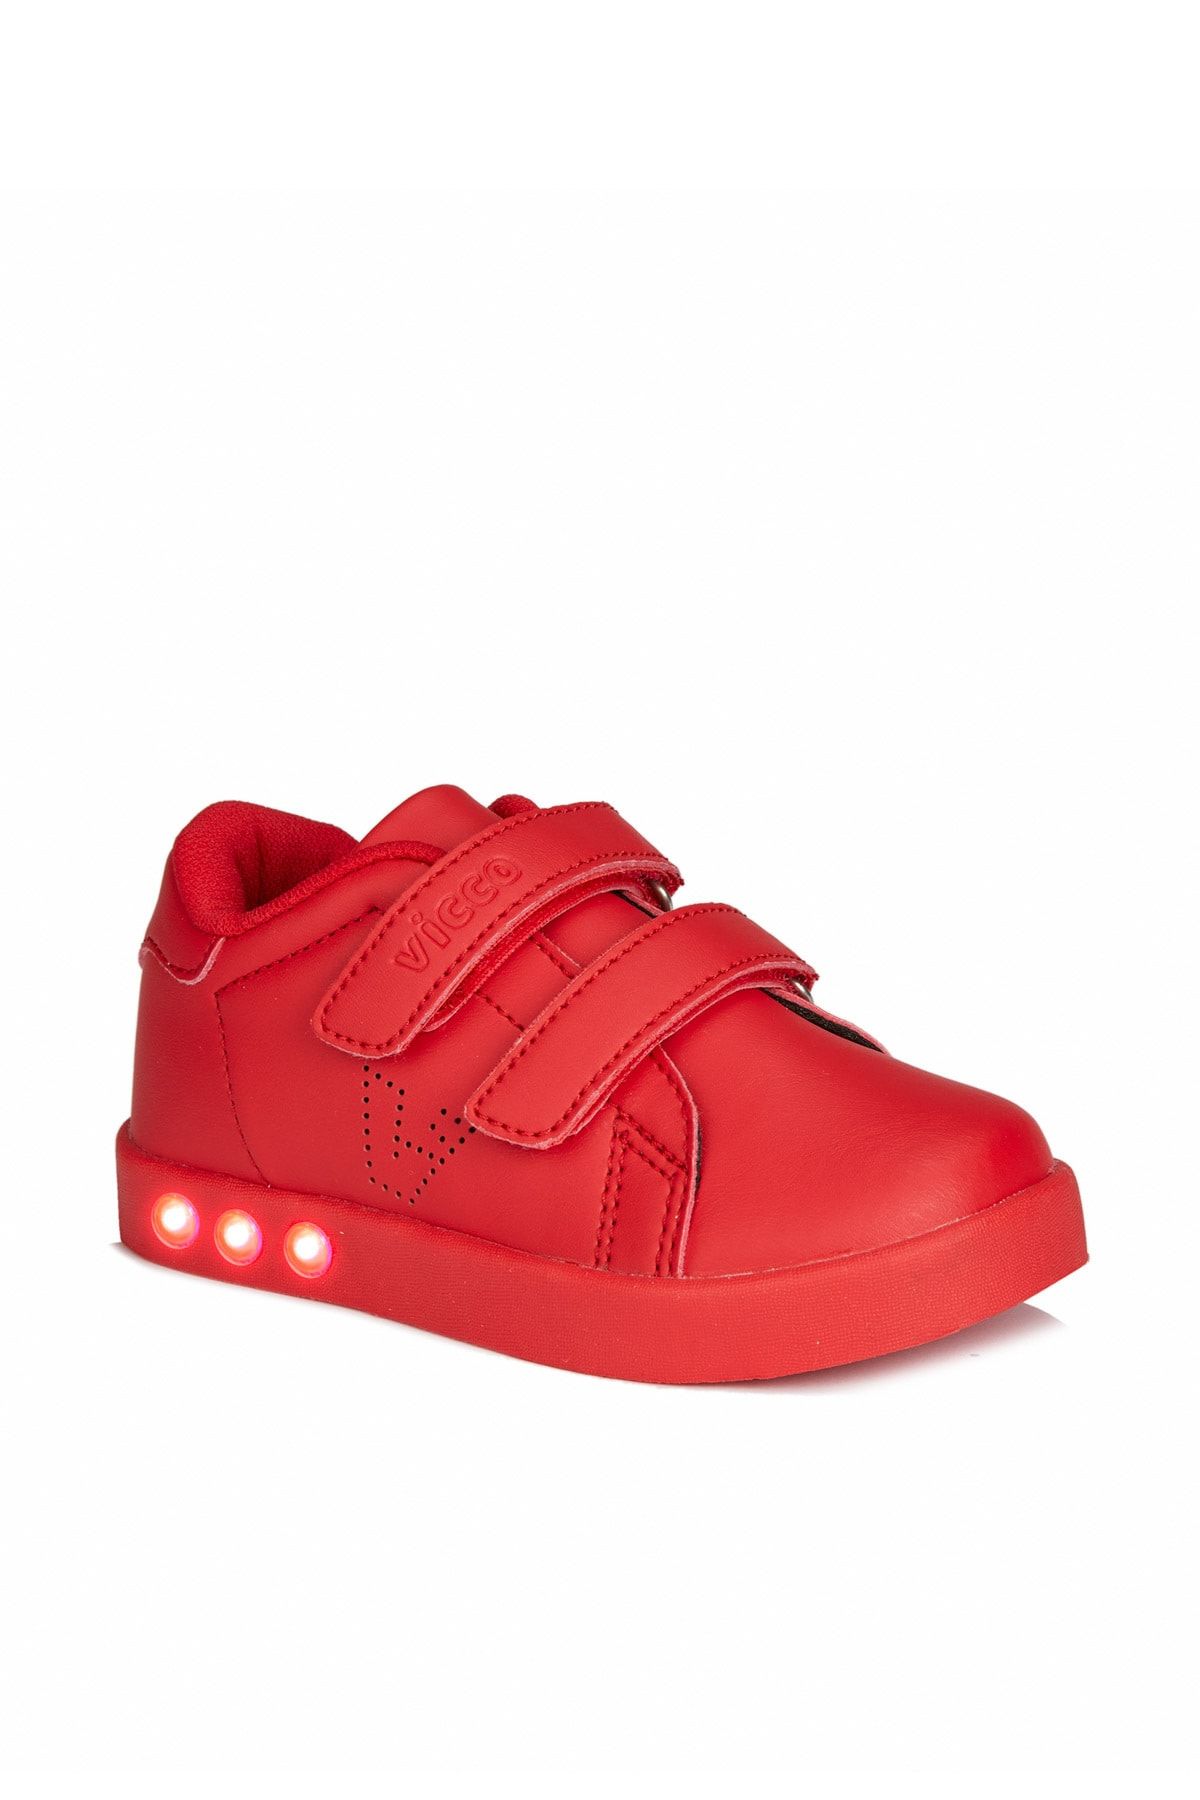 Vicco Oyo Sneaker Kırmızı Unisex Çocuk Işıklı Spor Ayakkabı